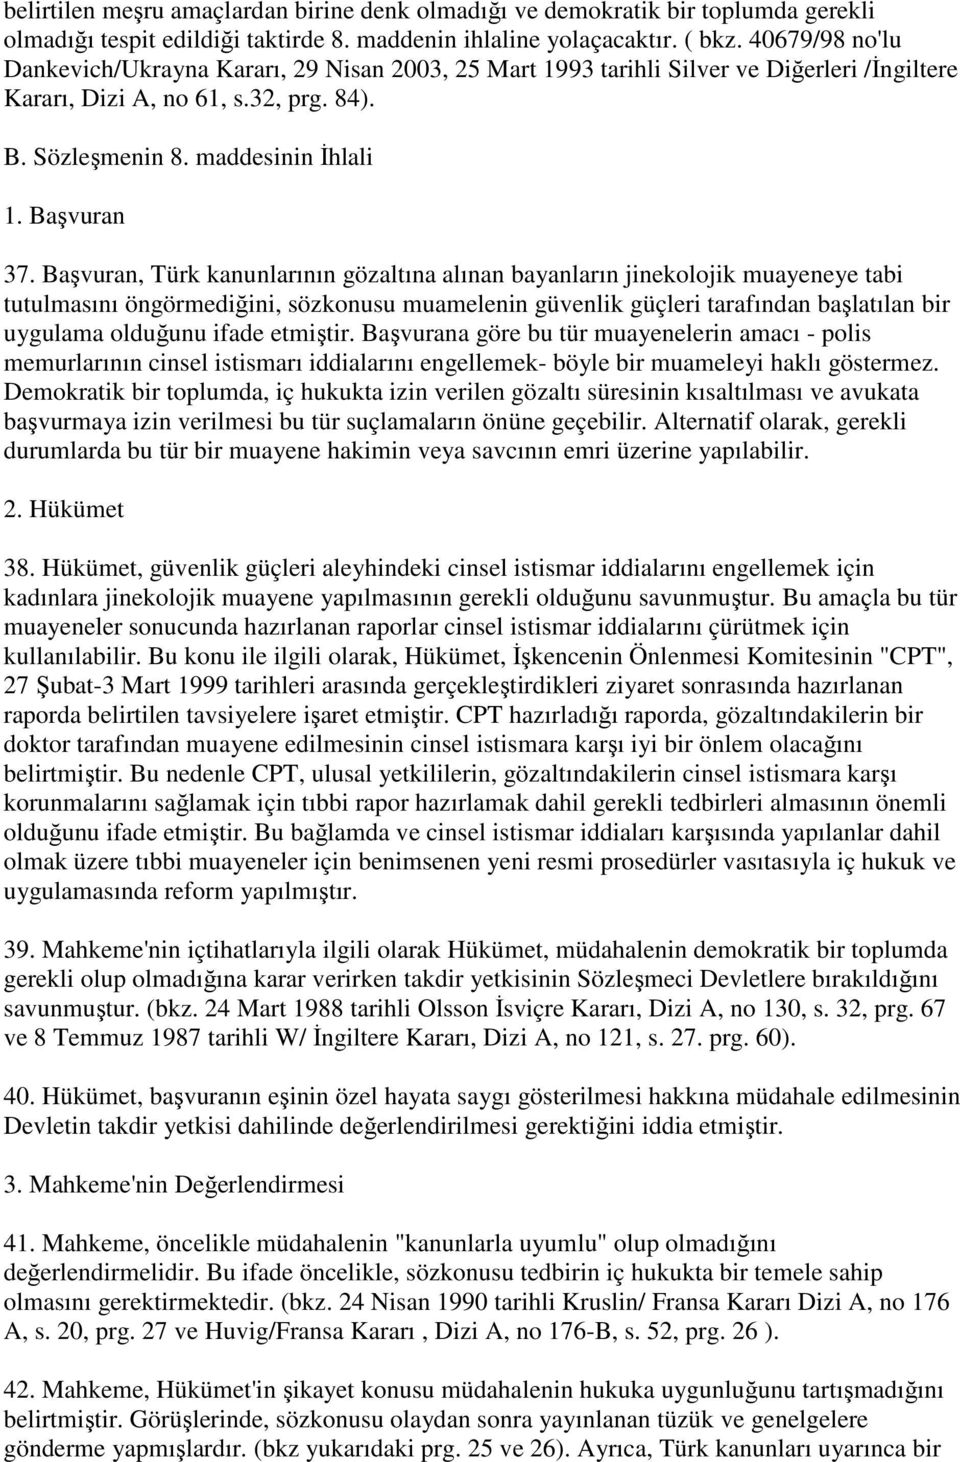 Başvuran, Türk kanunlarının gözaltına alınan bayanların jinekolojik muayeneye tabi tutulmasını öngörmediğini, sözkonusu muamelenin güvenlik güçleri tarafından başlatılan bir uygulama olduğunu ifade